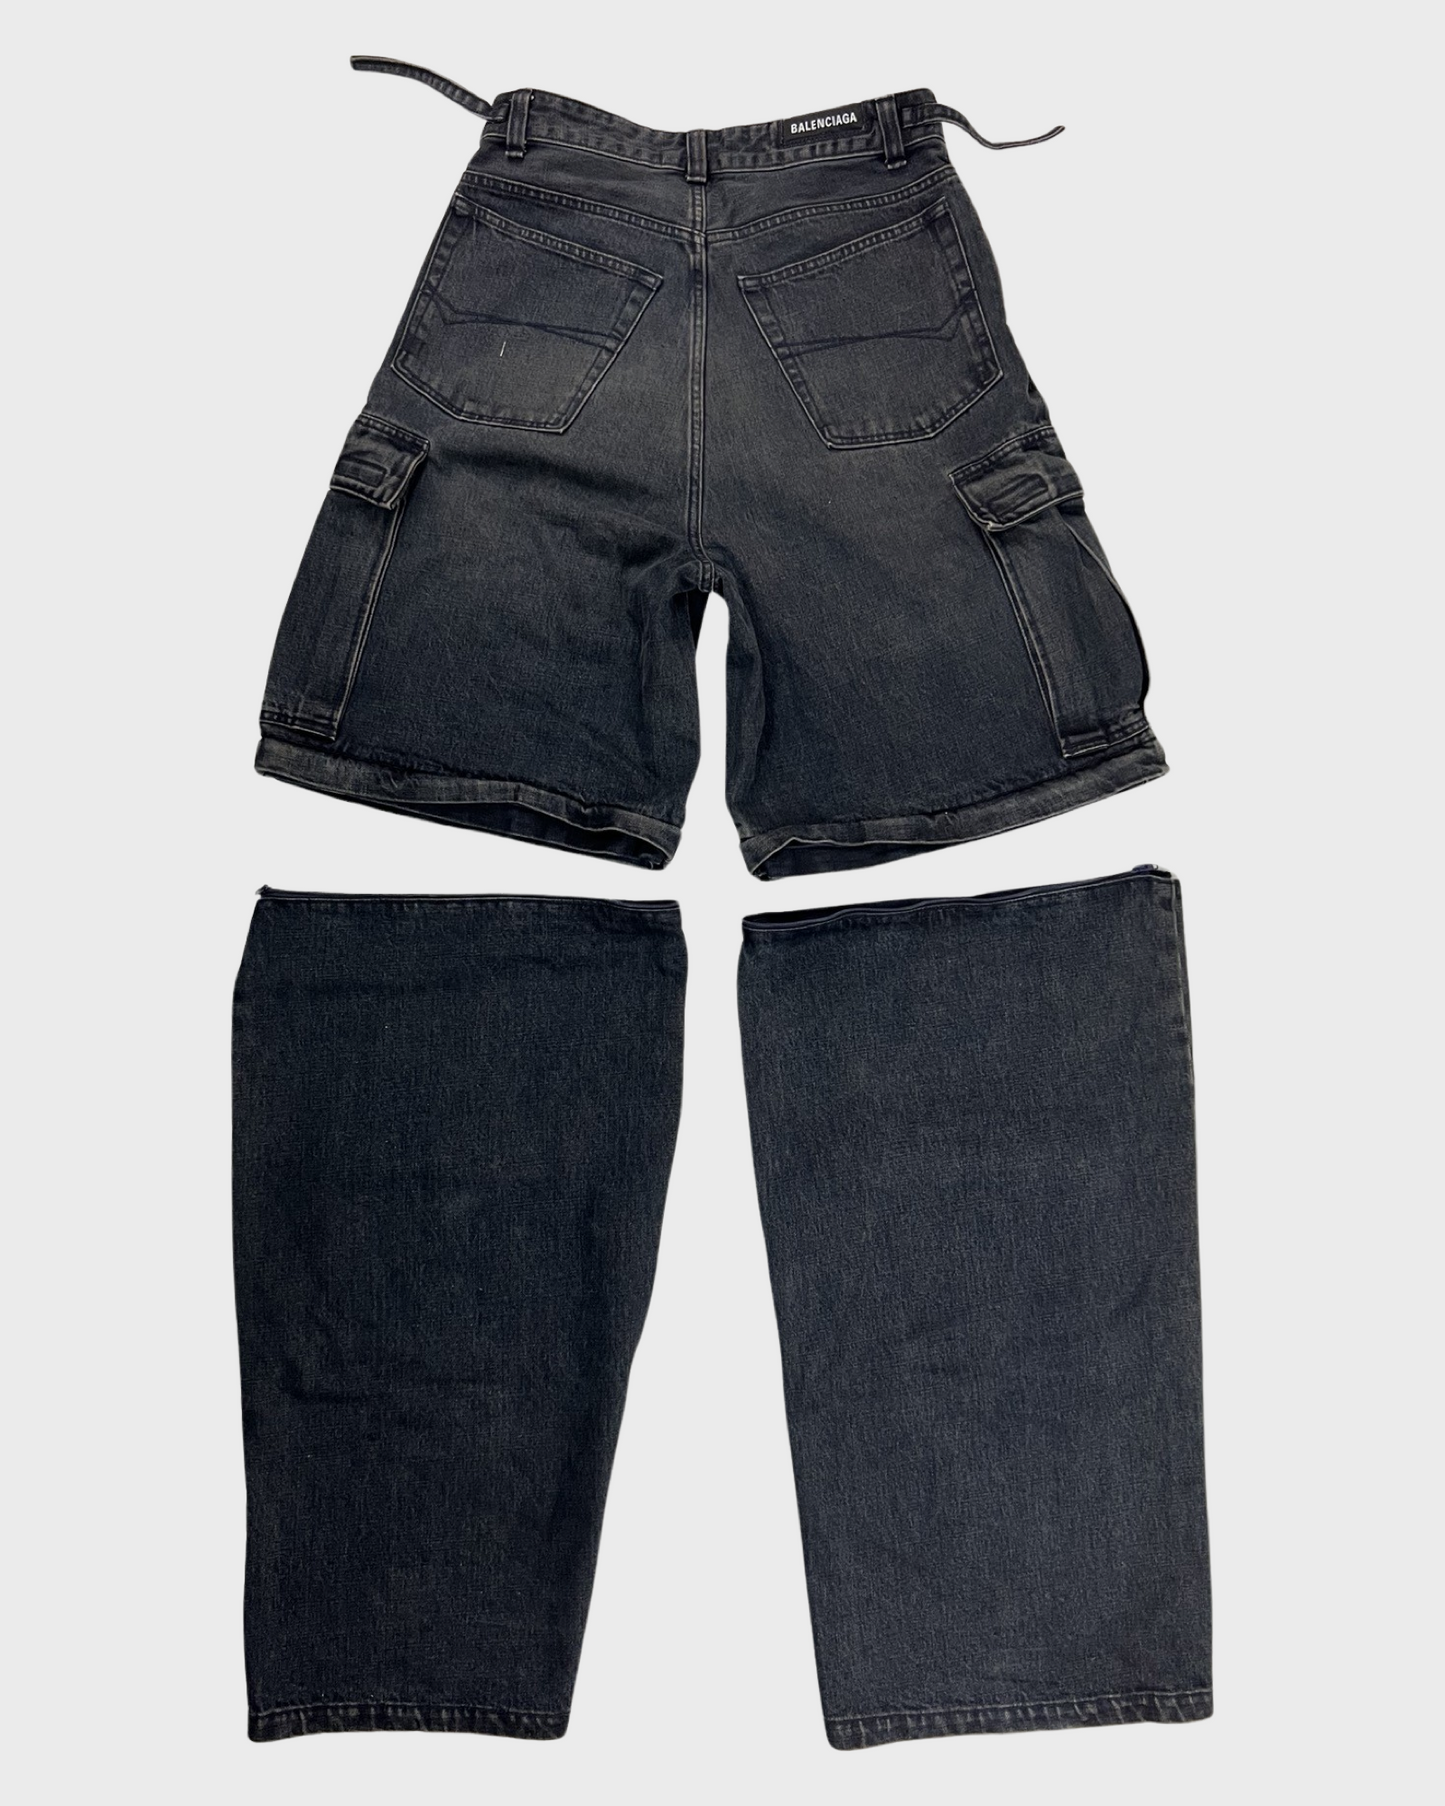 Balenciaga AW21 denim cargo pants Jeans in brownish blue SZ:W29